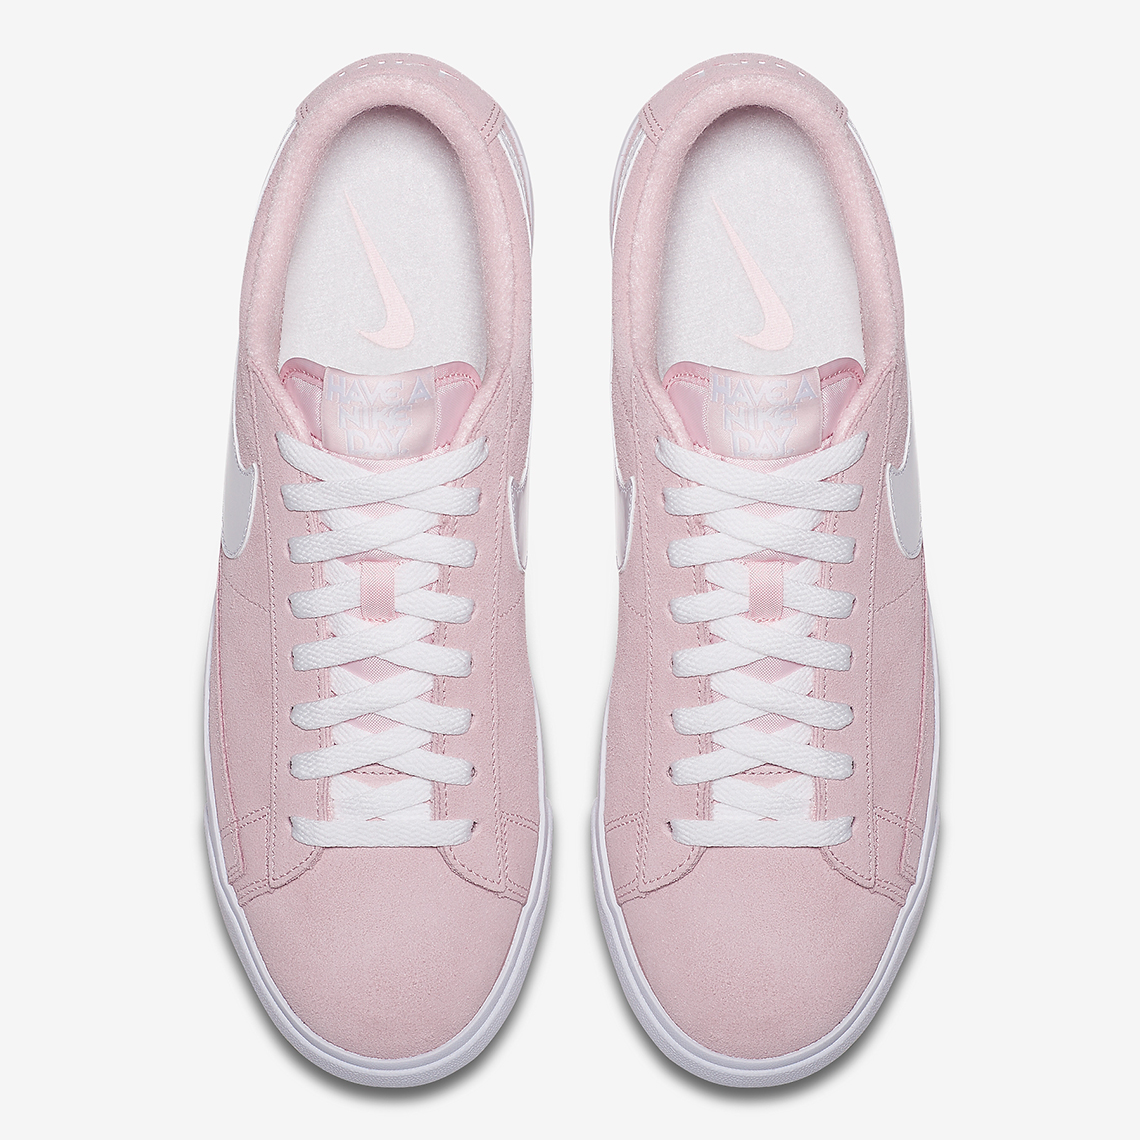 Nike Blazer Low Premium Pastel Pink Bq6813 600 5